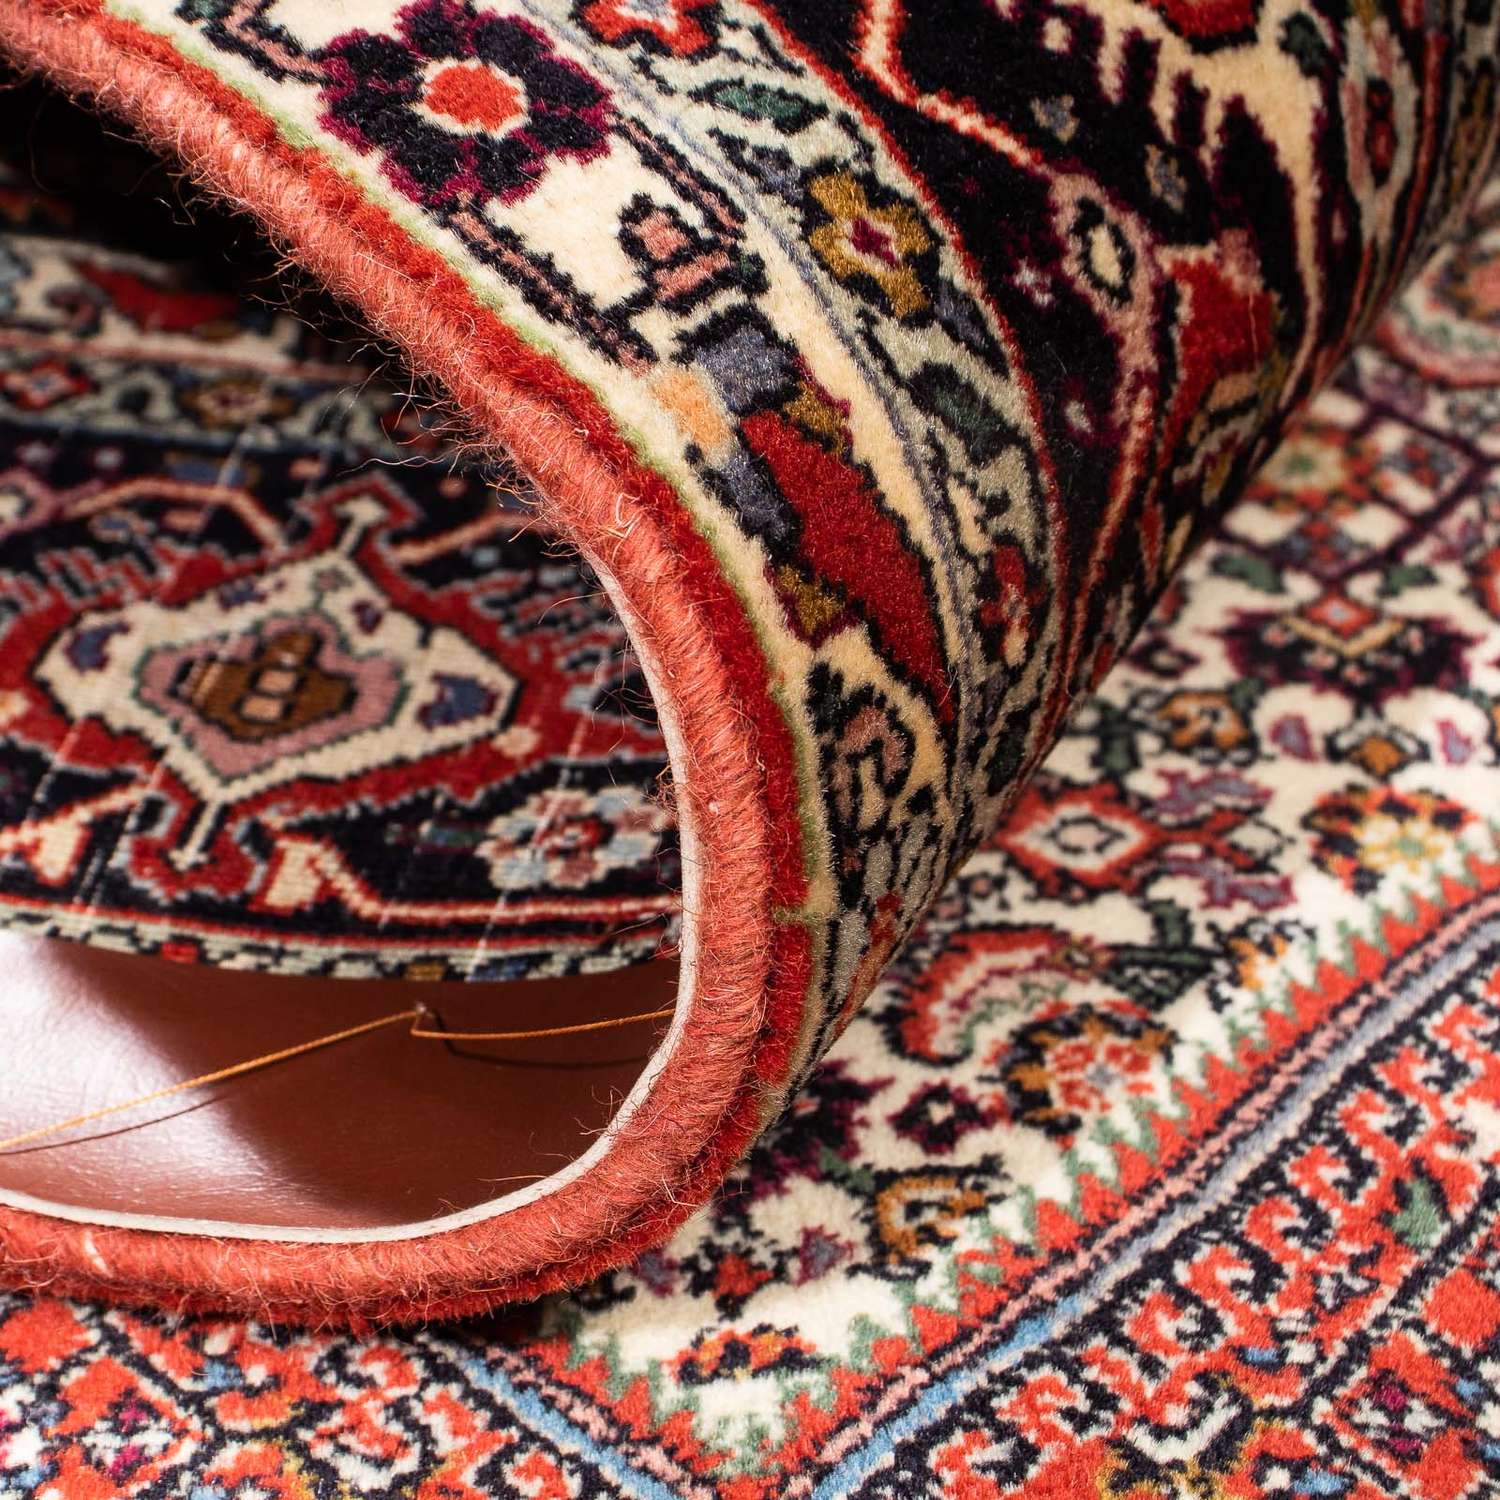 Perzisch tapijt - Bijar - 244 x 153 cm - donkerrood